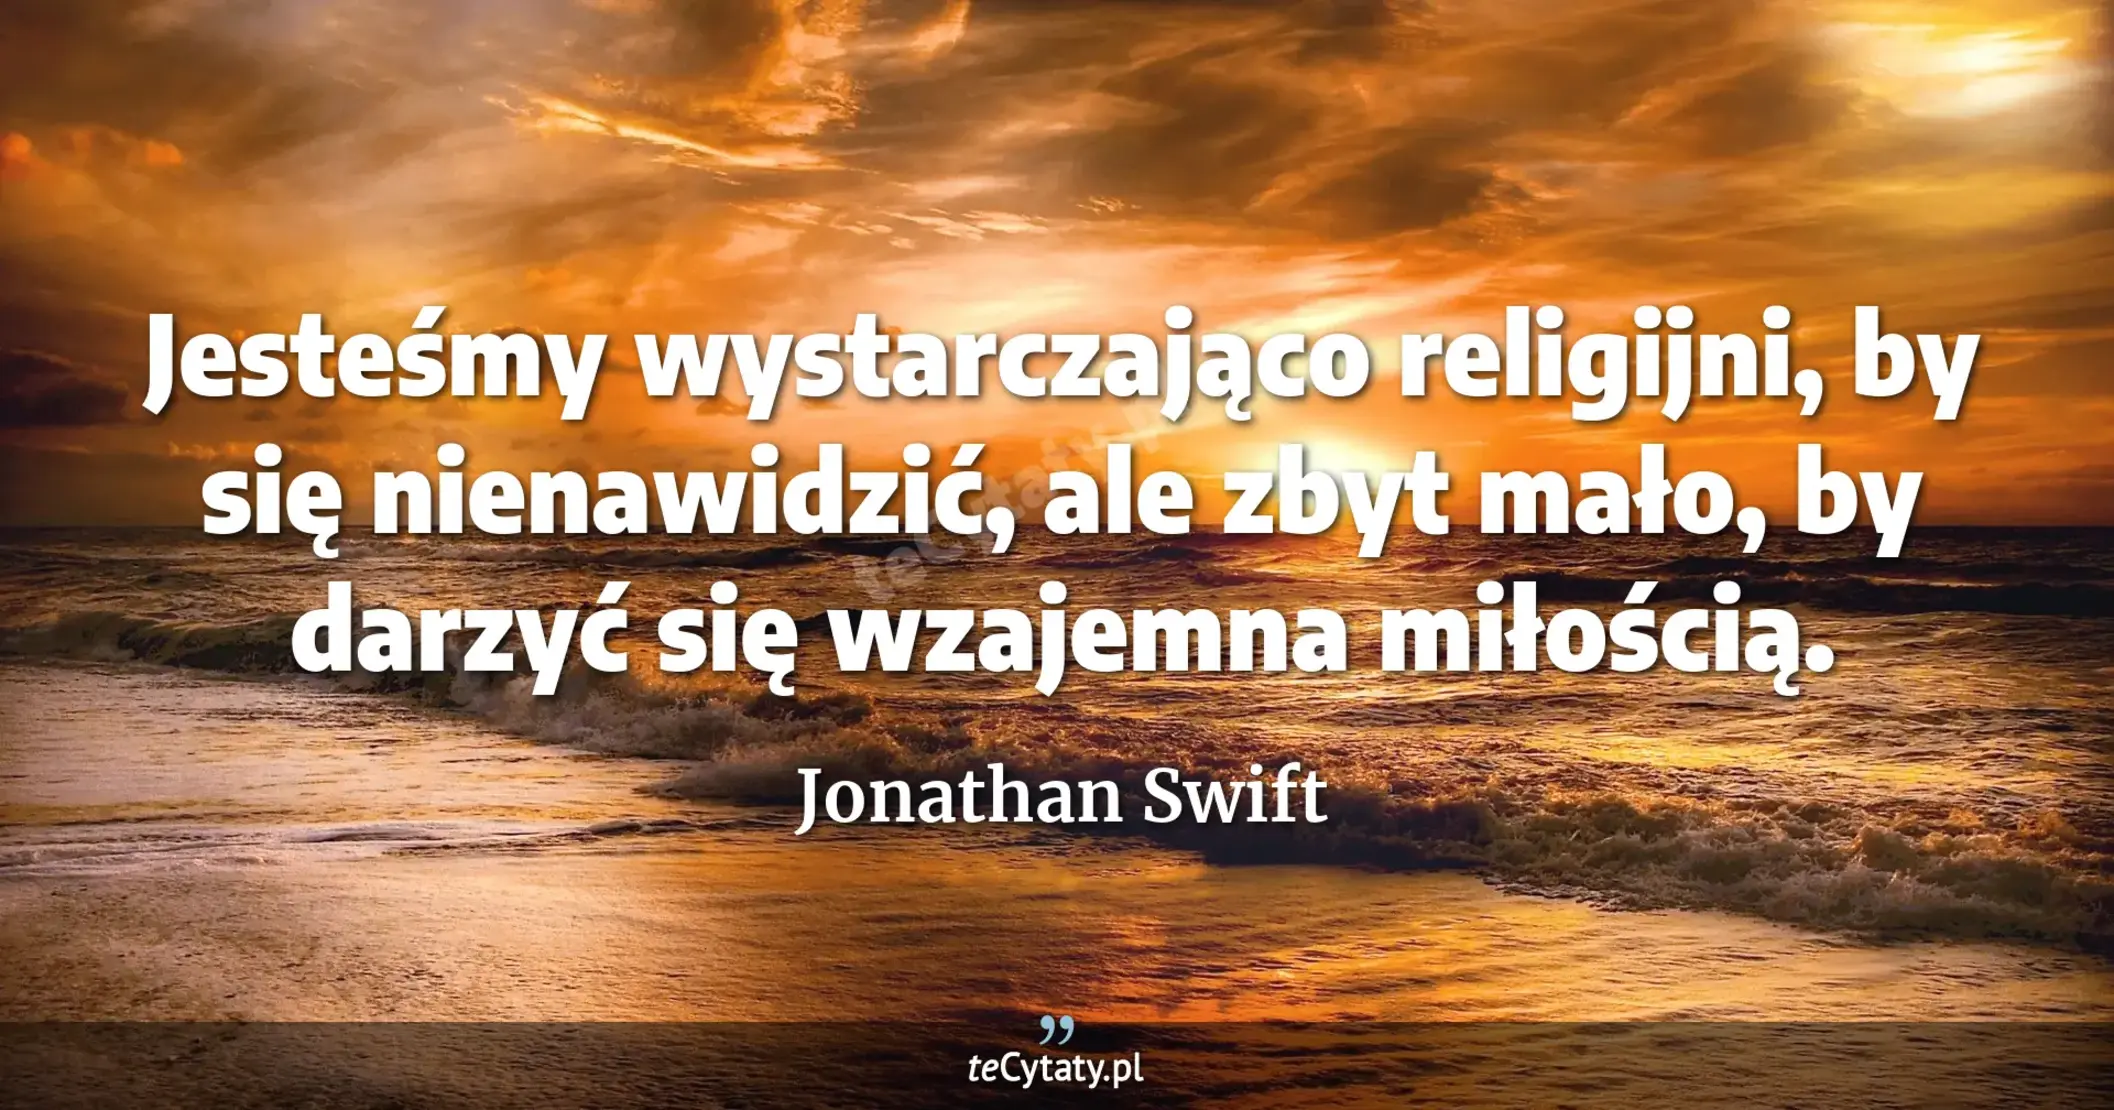 Jesteśmy wystarczająco religijni, by się nienawidzić, ale zbyt mało, by darzyć się wzajemna miłością. - Jonathan Swift